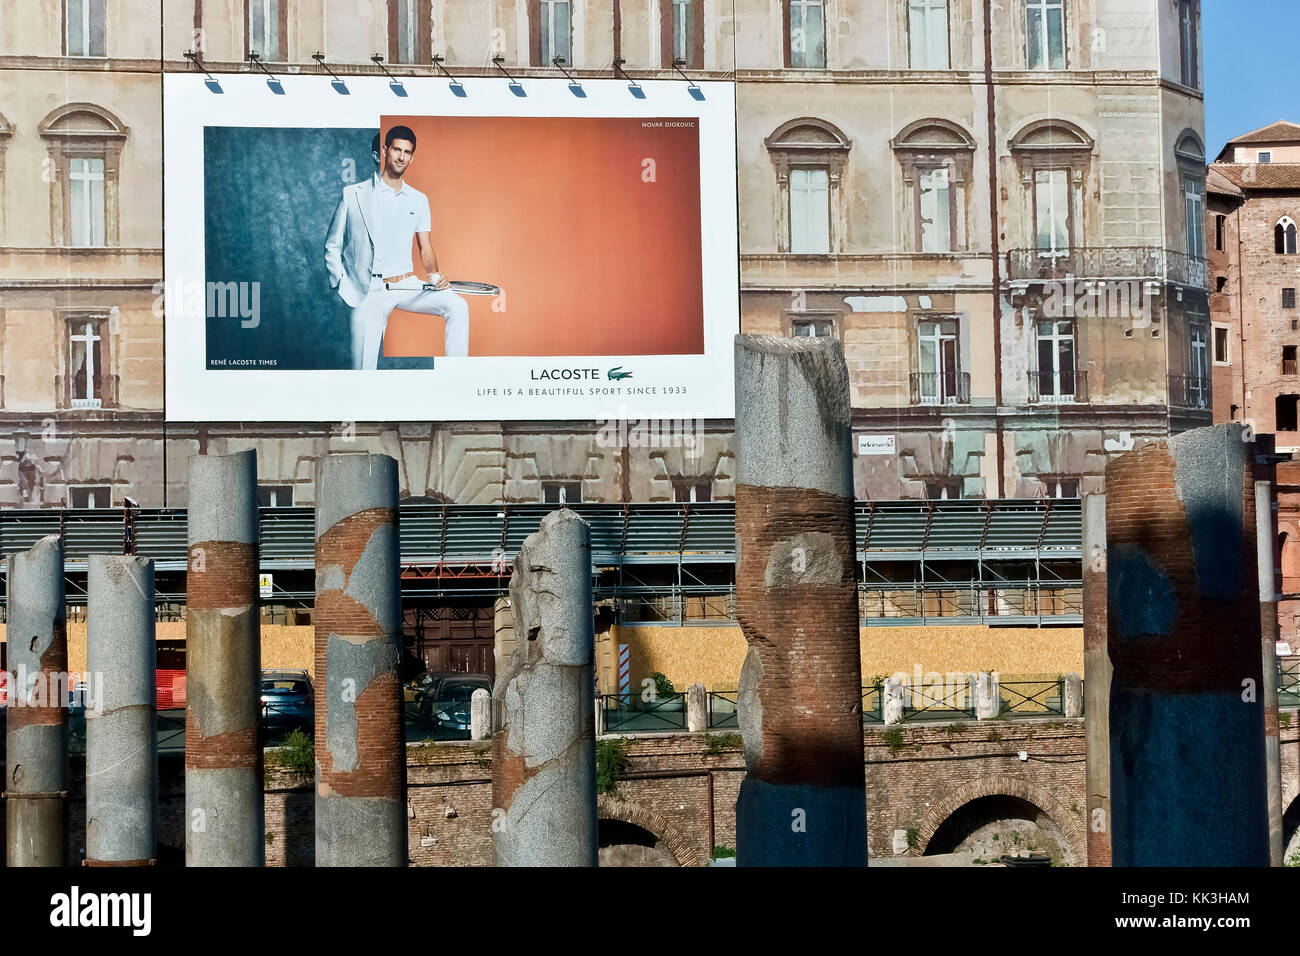 Lacoste cartellone pubblicitario su un edificio ponteggio durante i lavori di restauro, presso i Mercati di Traiano Forum. Roma, Italia. Il nuovo e il vecchio concetto di contrasto. Foto Stock